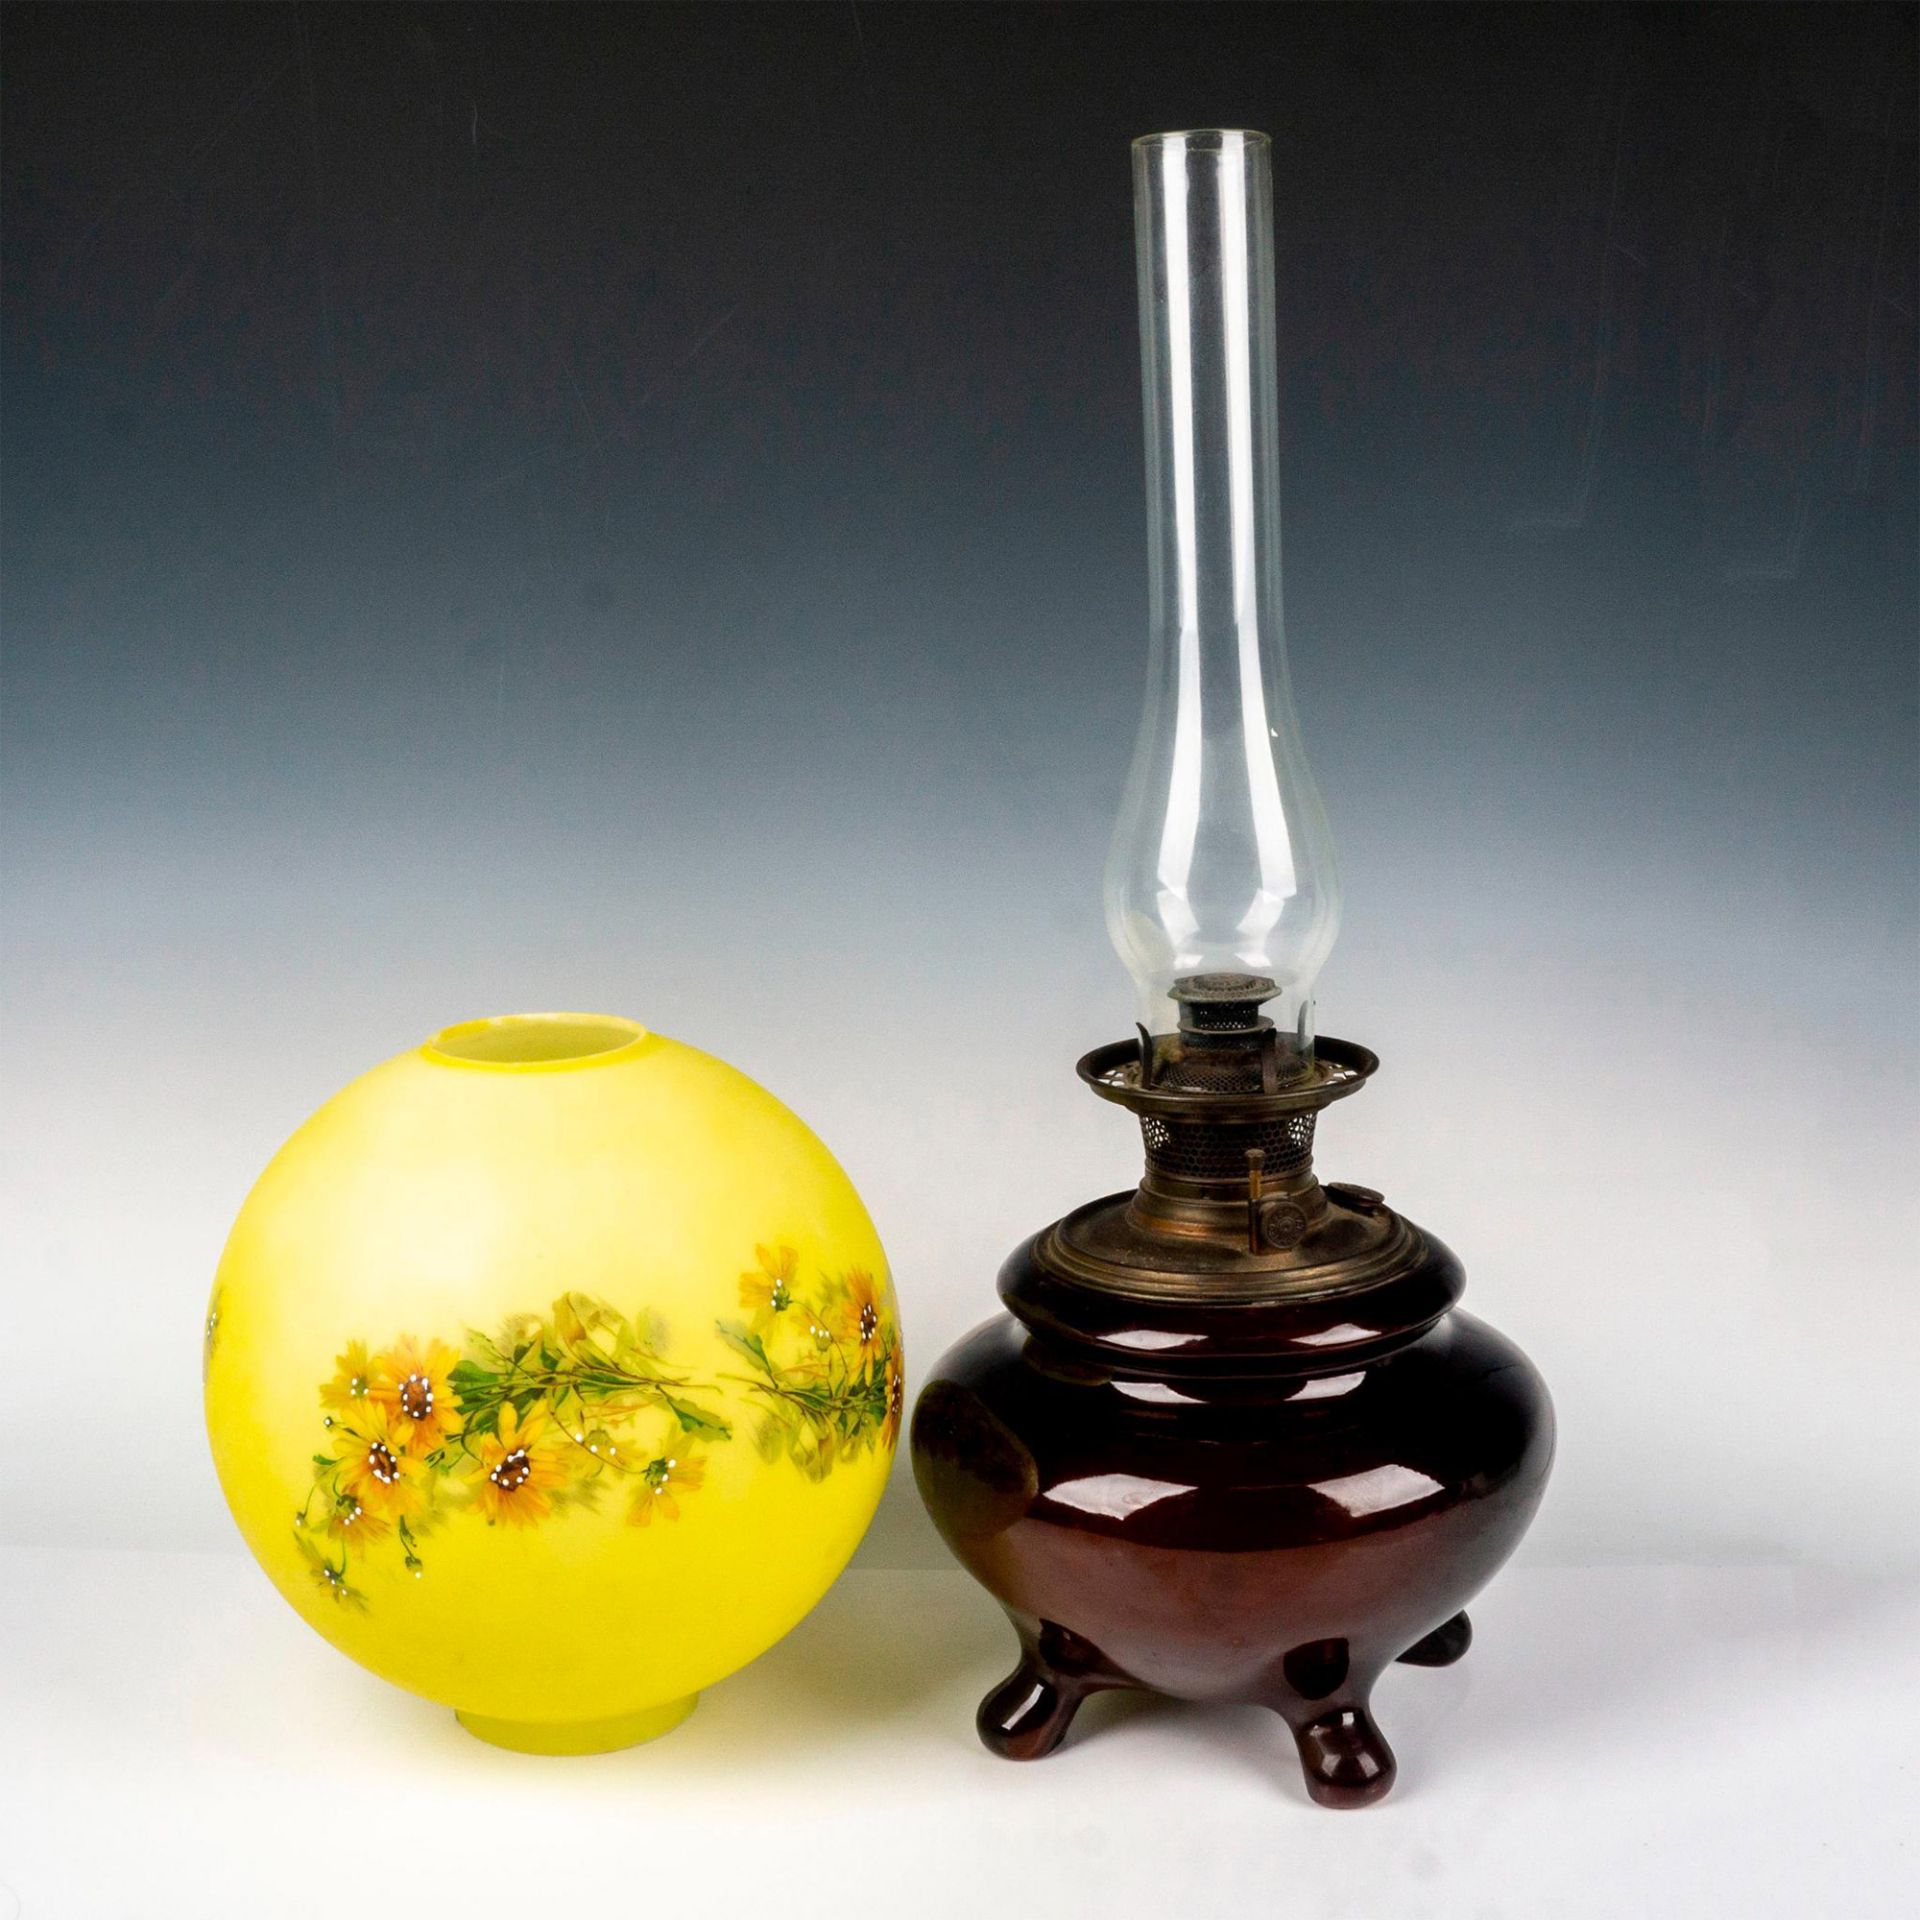 Weller Louwelsa Art Pottery Oil Lamp - Image 3 of 4